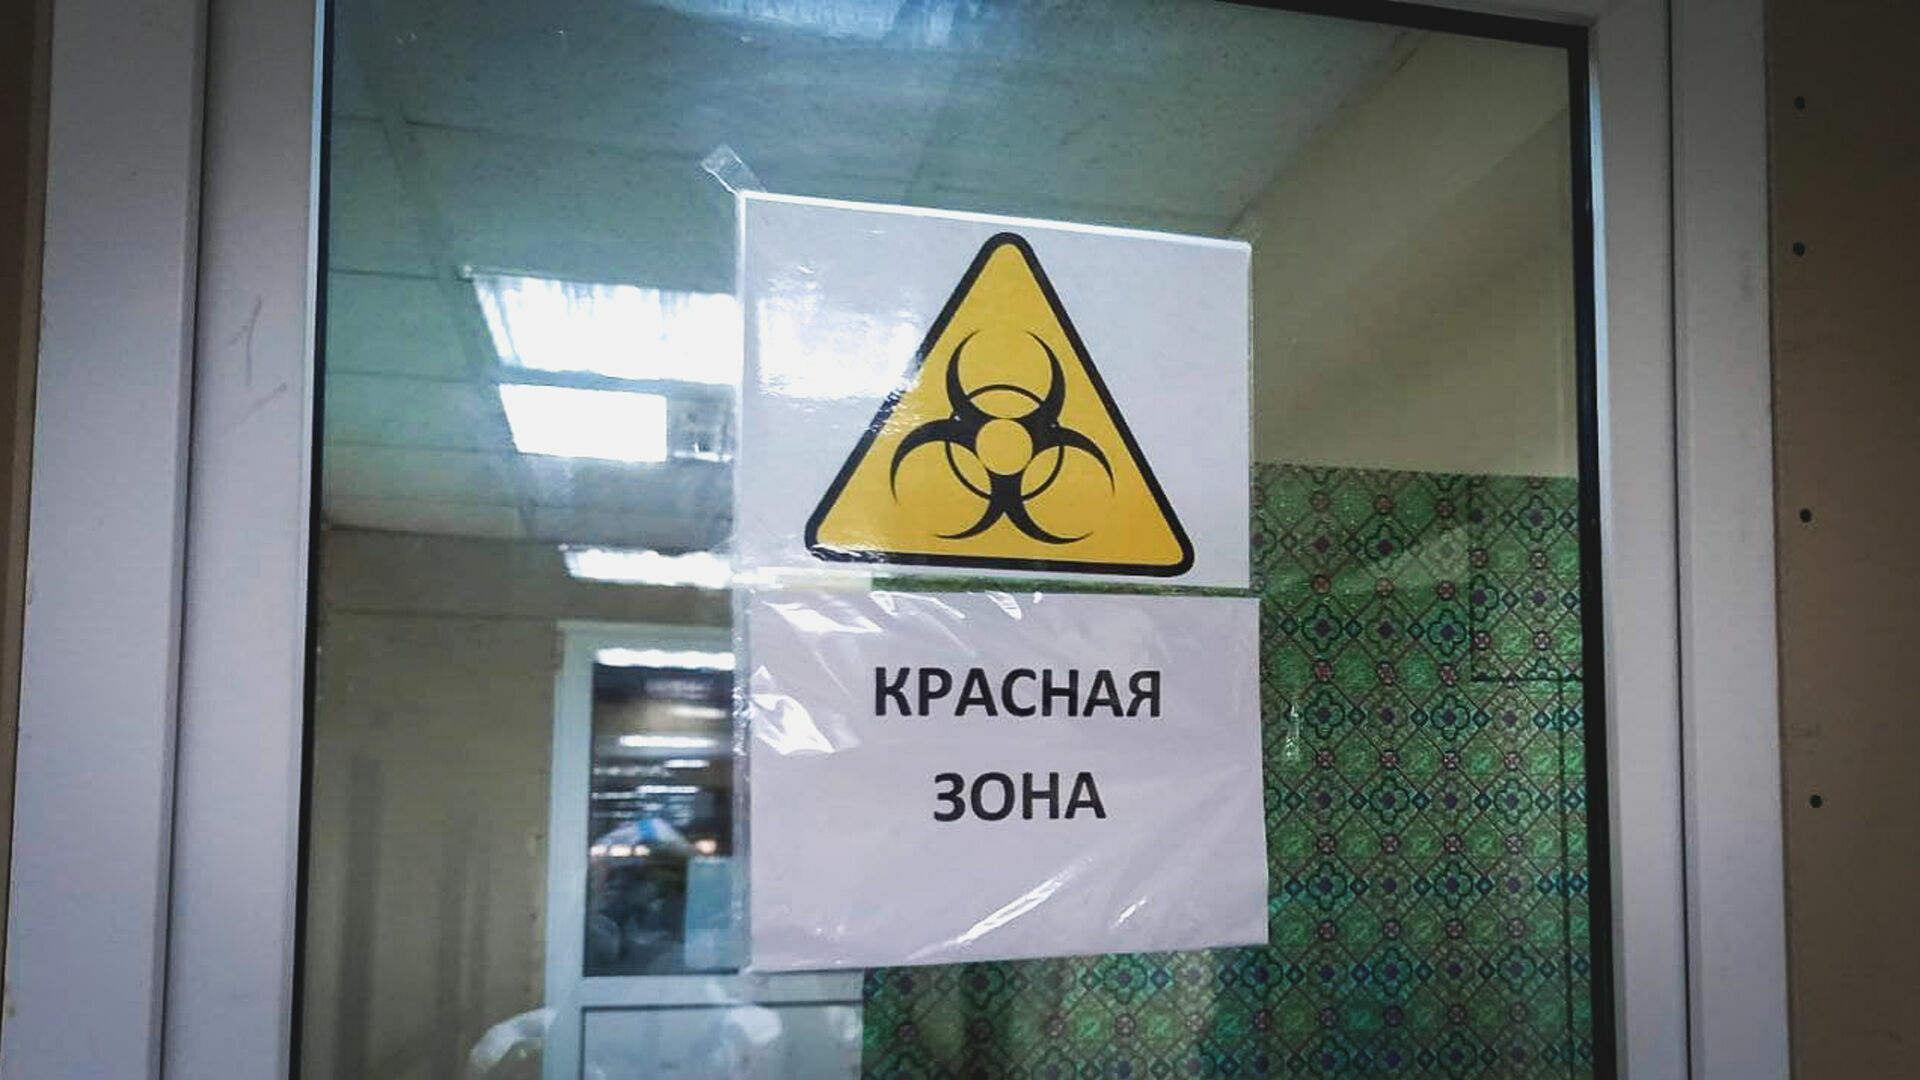 Коронавирус в Пермском крае: где и сколько болеют?